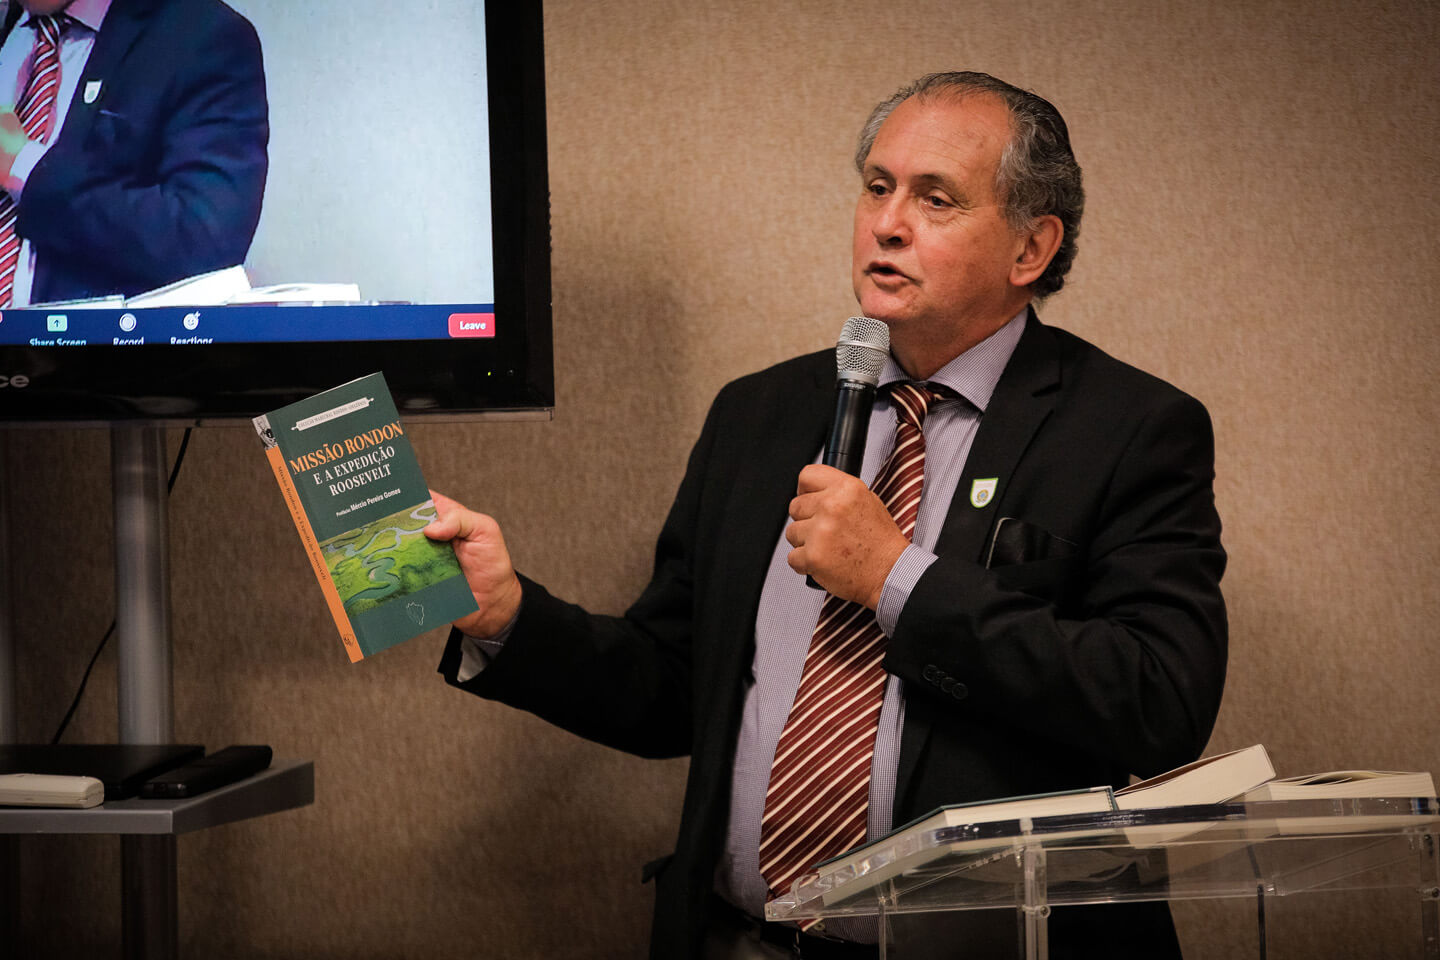 Professor-doutor Antônio Flávio Testa apresentou o Projeto e os livros do Lançamento